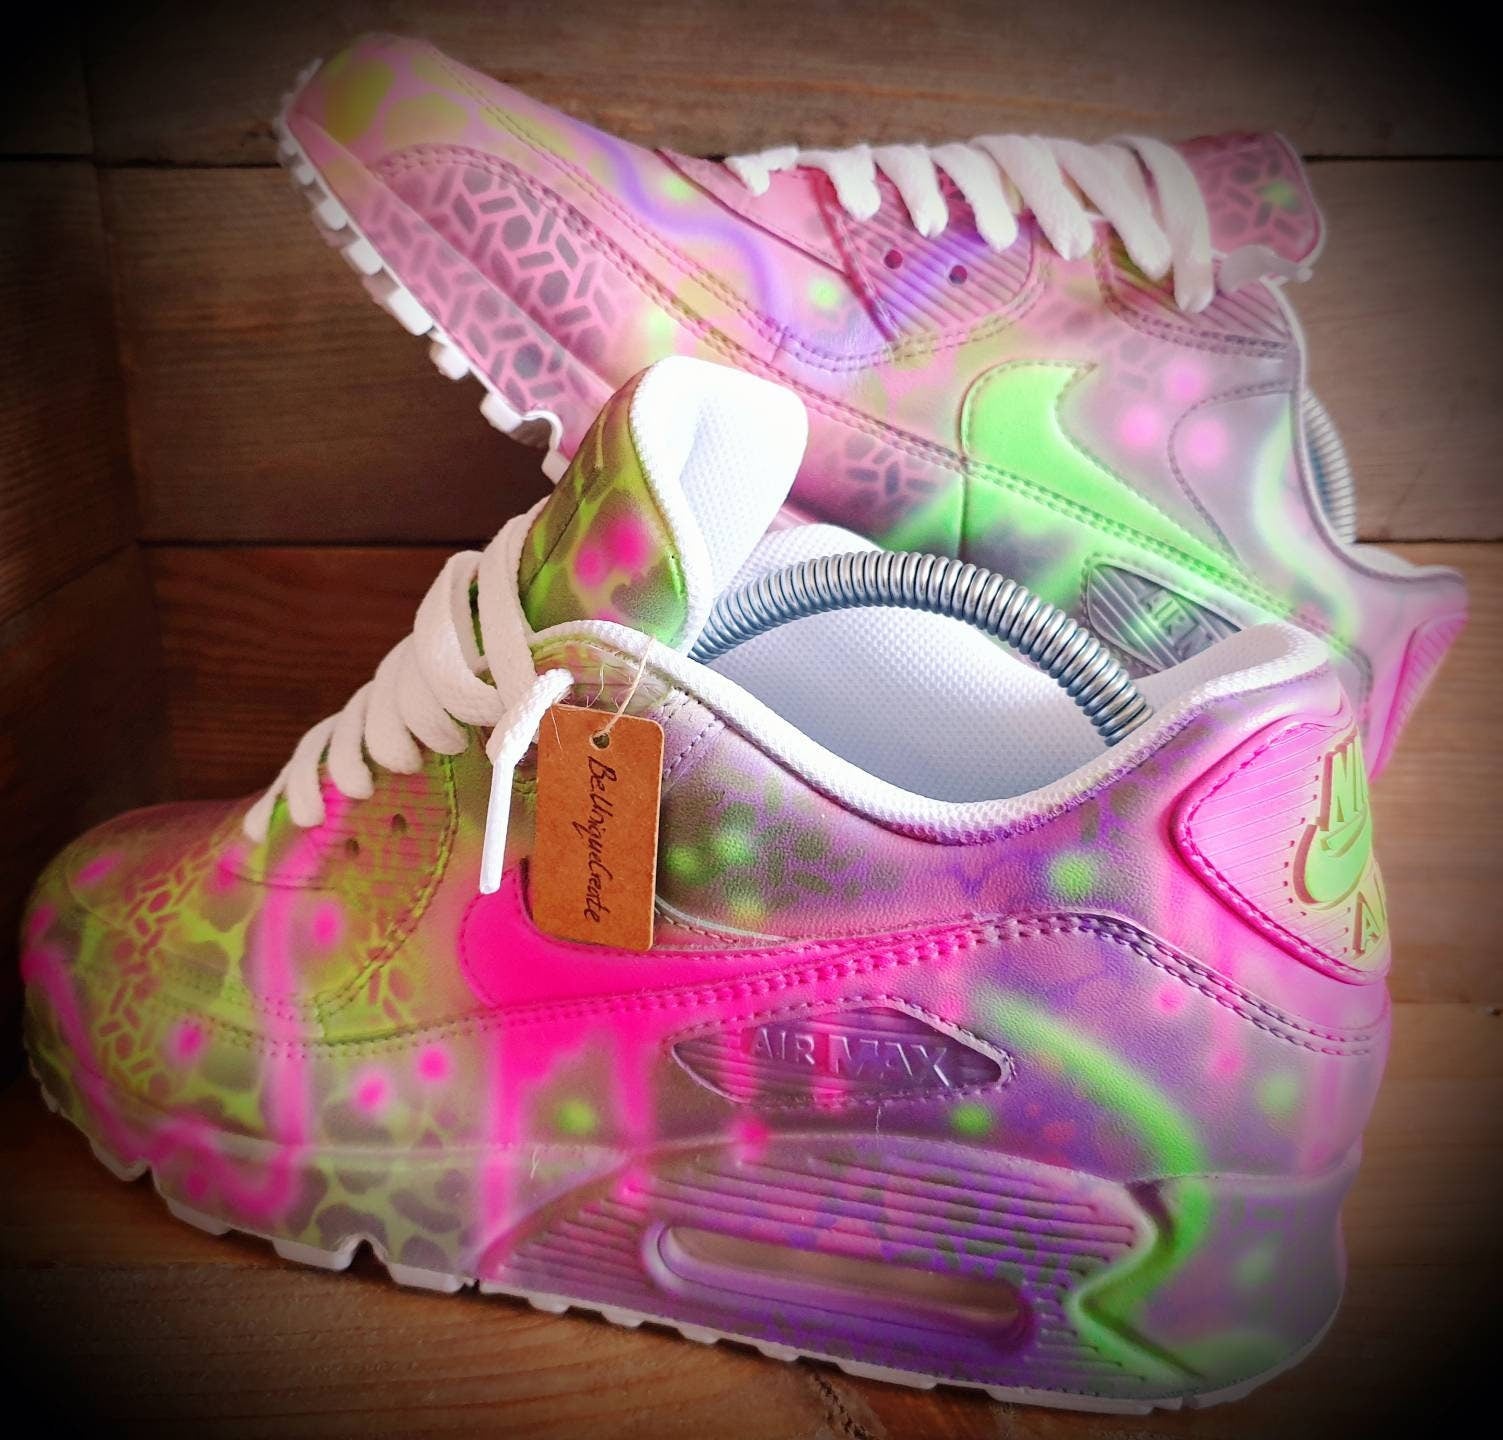 Custom Painted Air Max  90/Sneakers/Shoes/Kicks/Premium/Personalised/Pink-Purple Graffiti